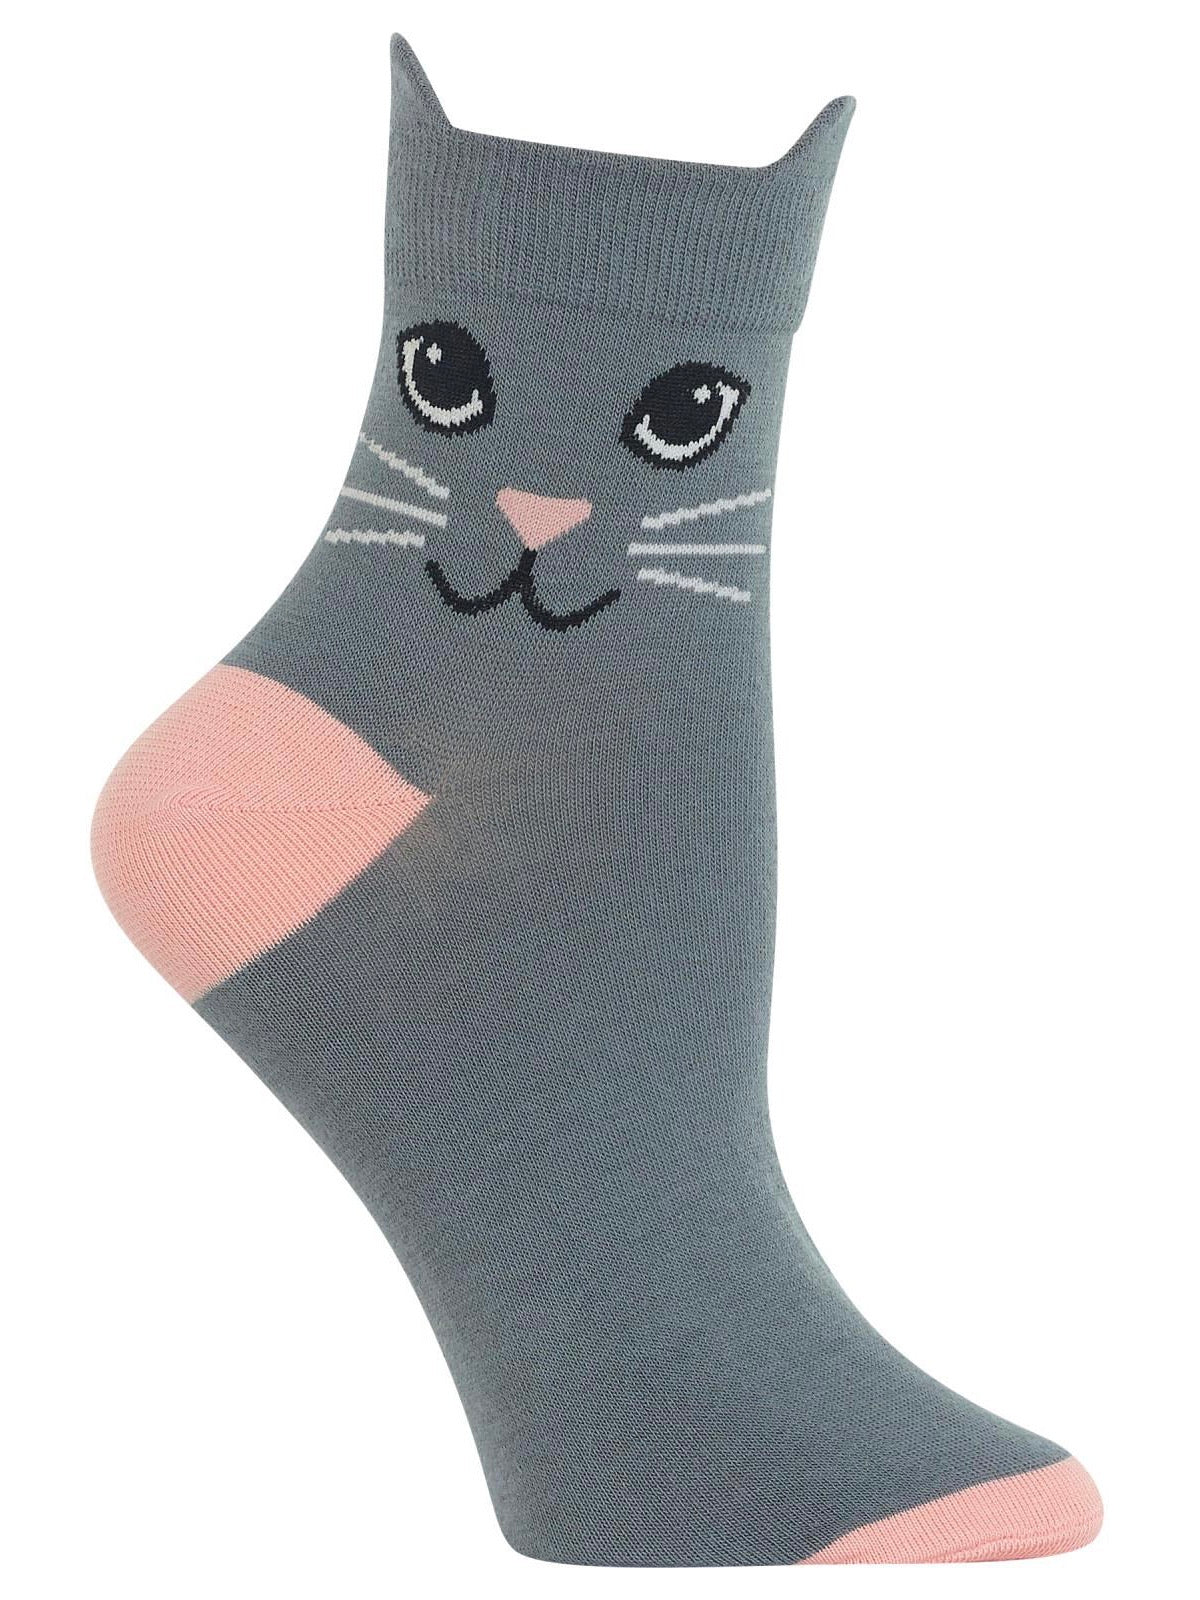 Women’s Cat Ears Anklet Socks Gray